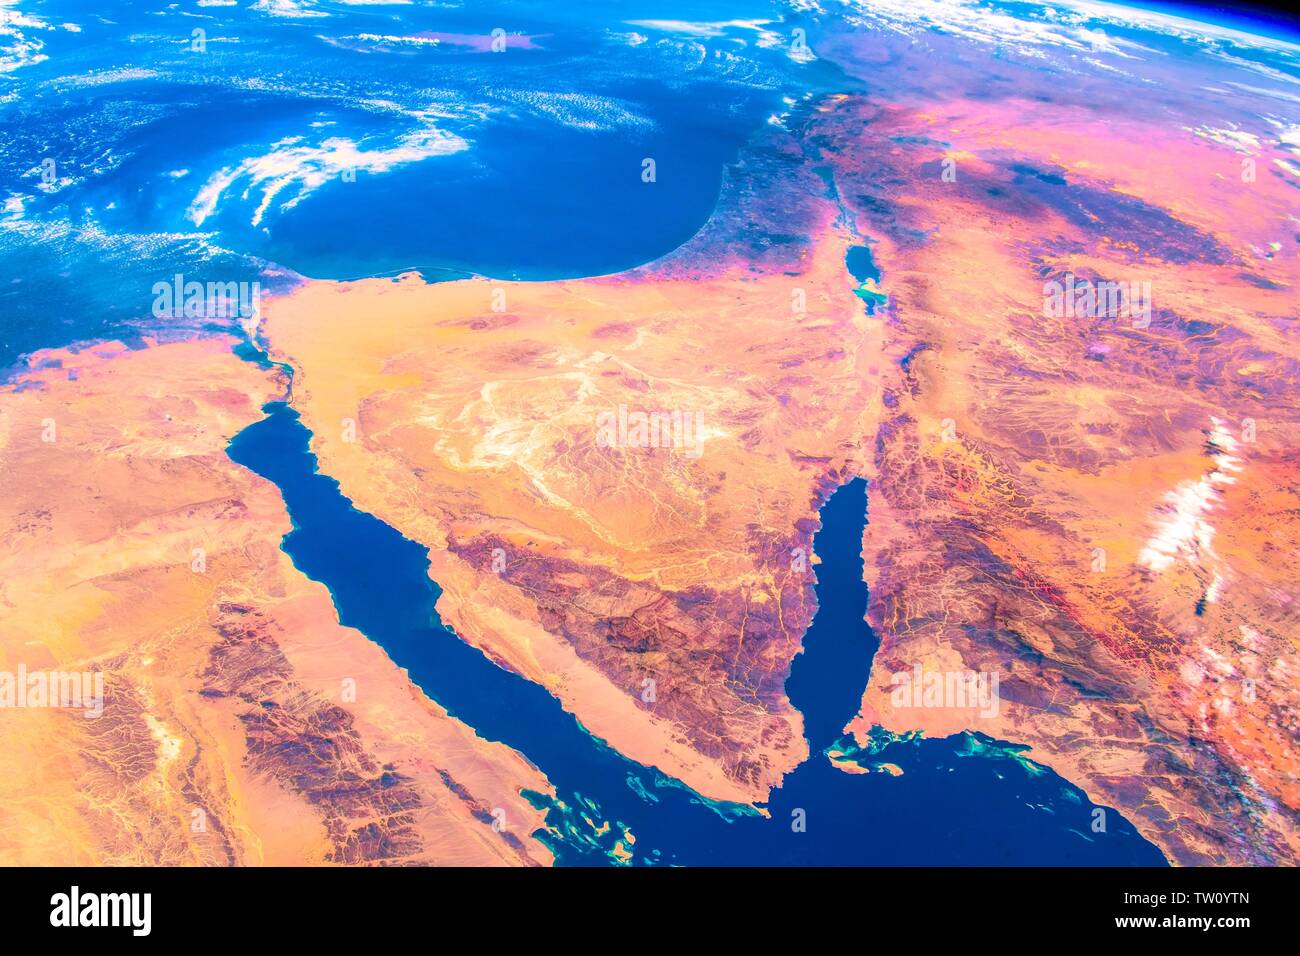 Corteza de color vibrante de nuestro planeta. La belleza de la naturaleza de nuestro planeta visto desde la Estación Espacial Internacional (ISS). La imagen es una publi Foto de stock